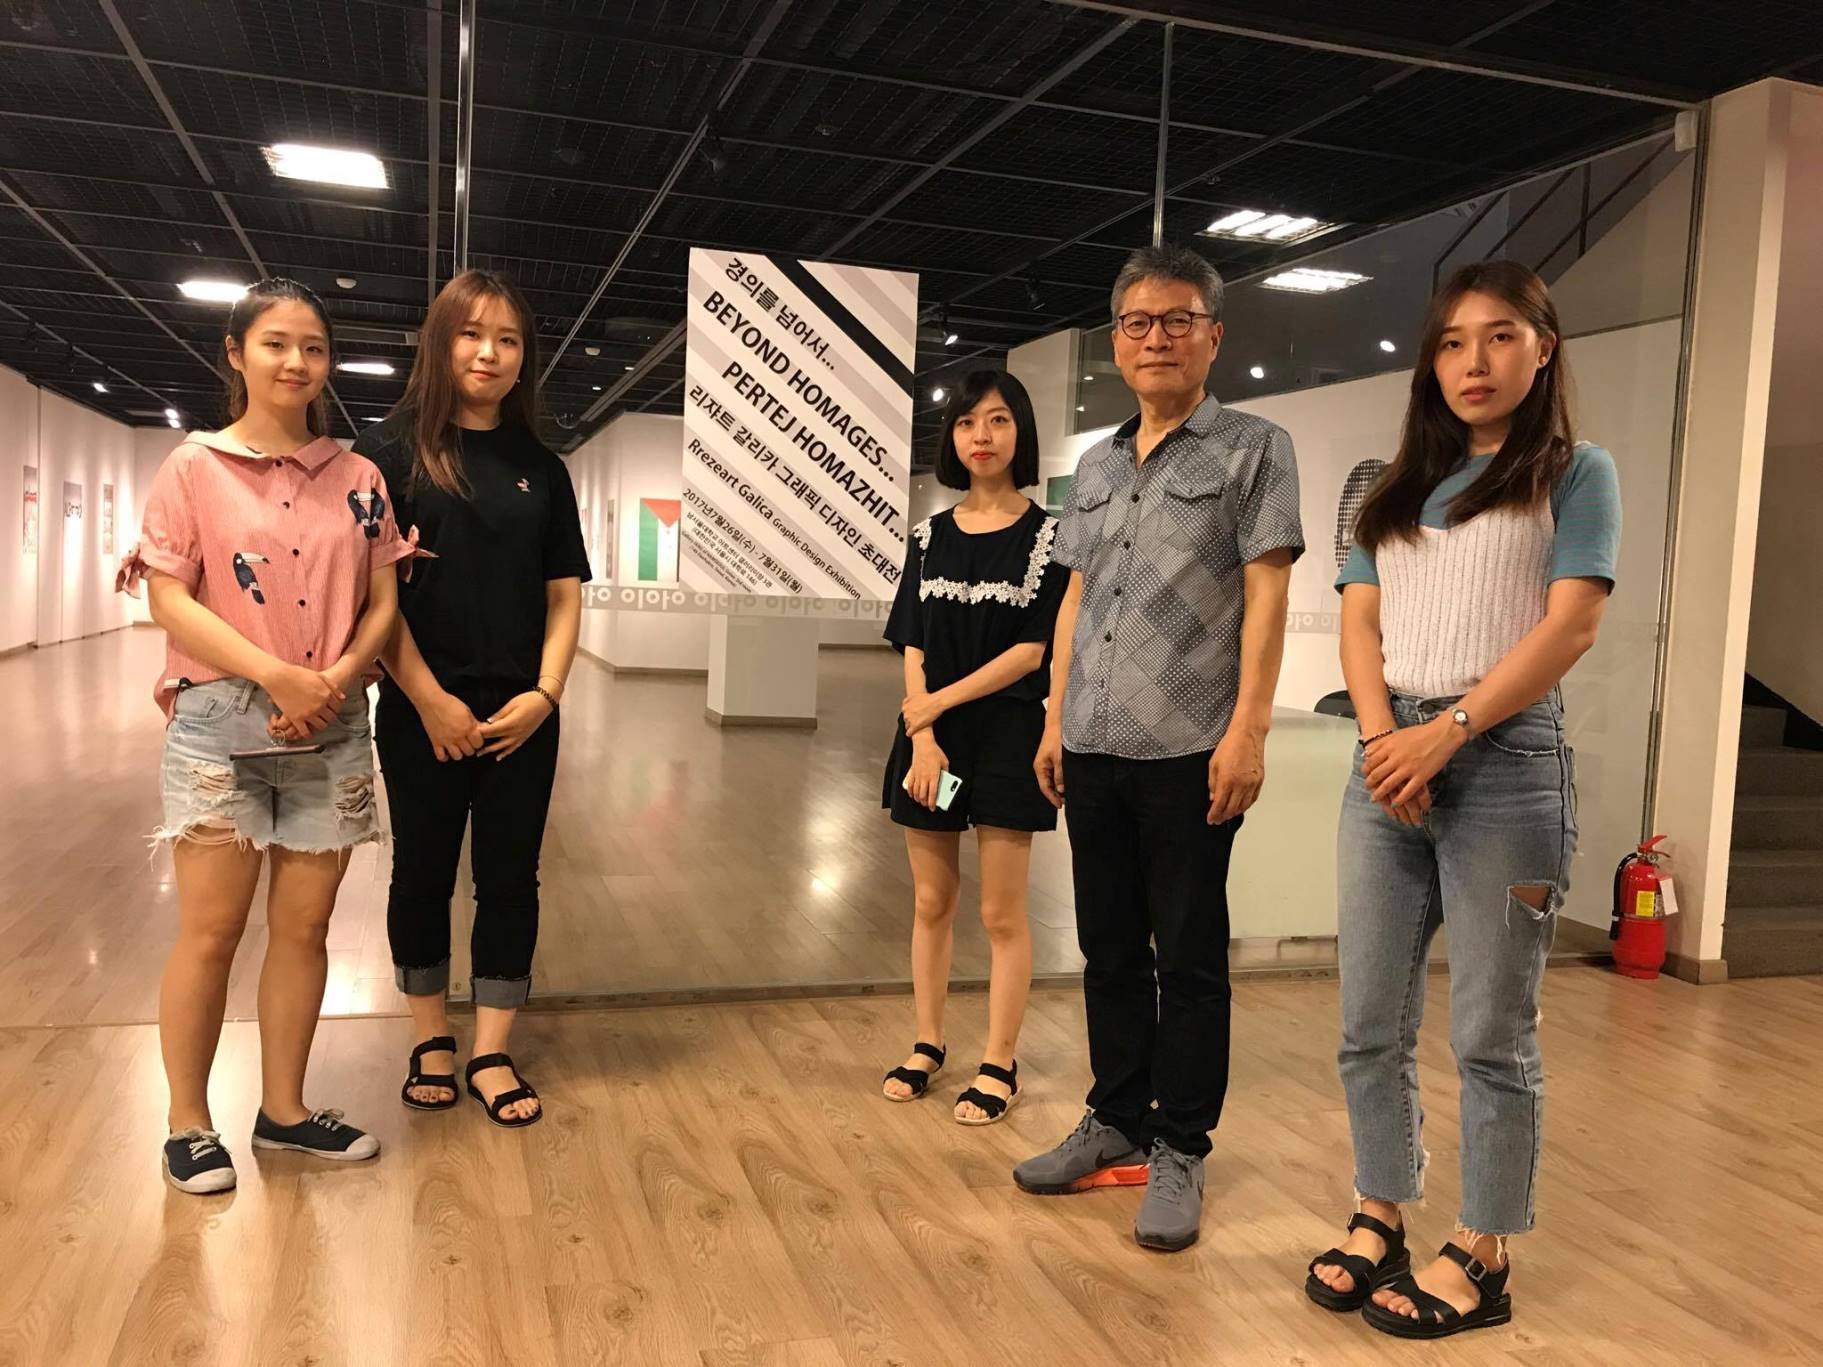 Rrezeart Galica hap ekspozitën personale në Kore të Jugut